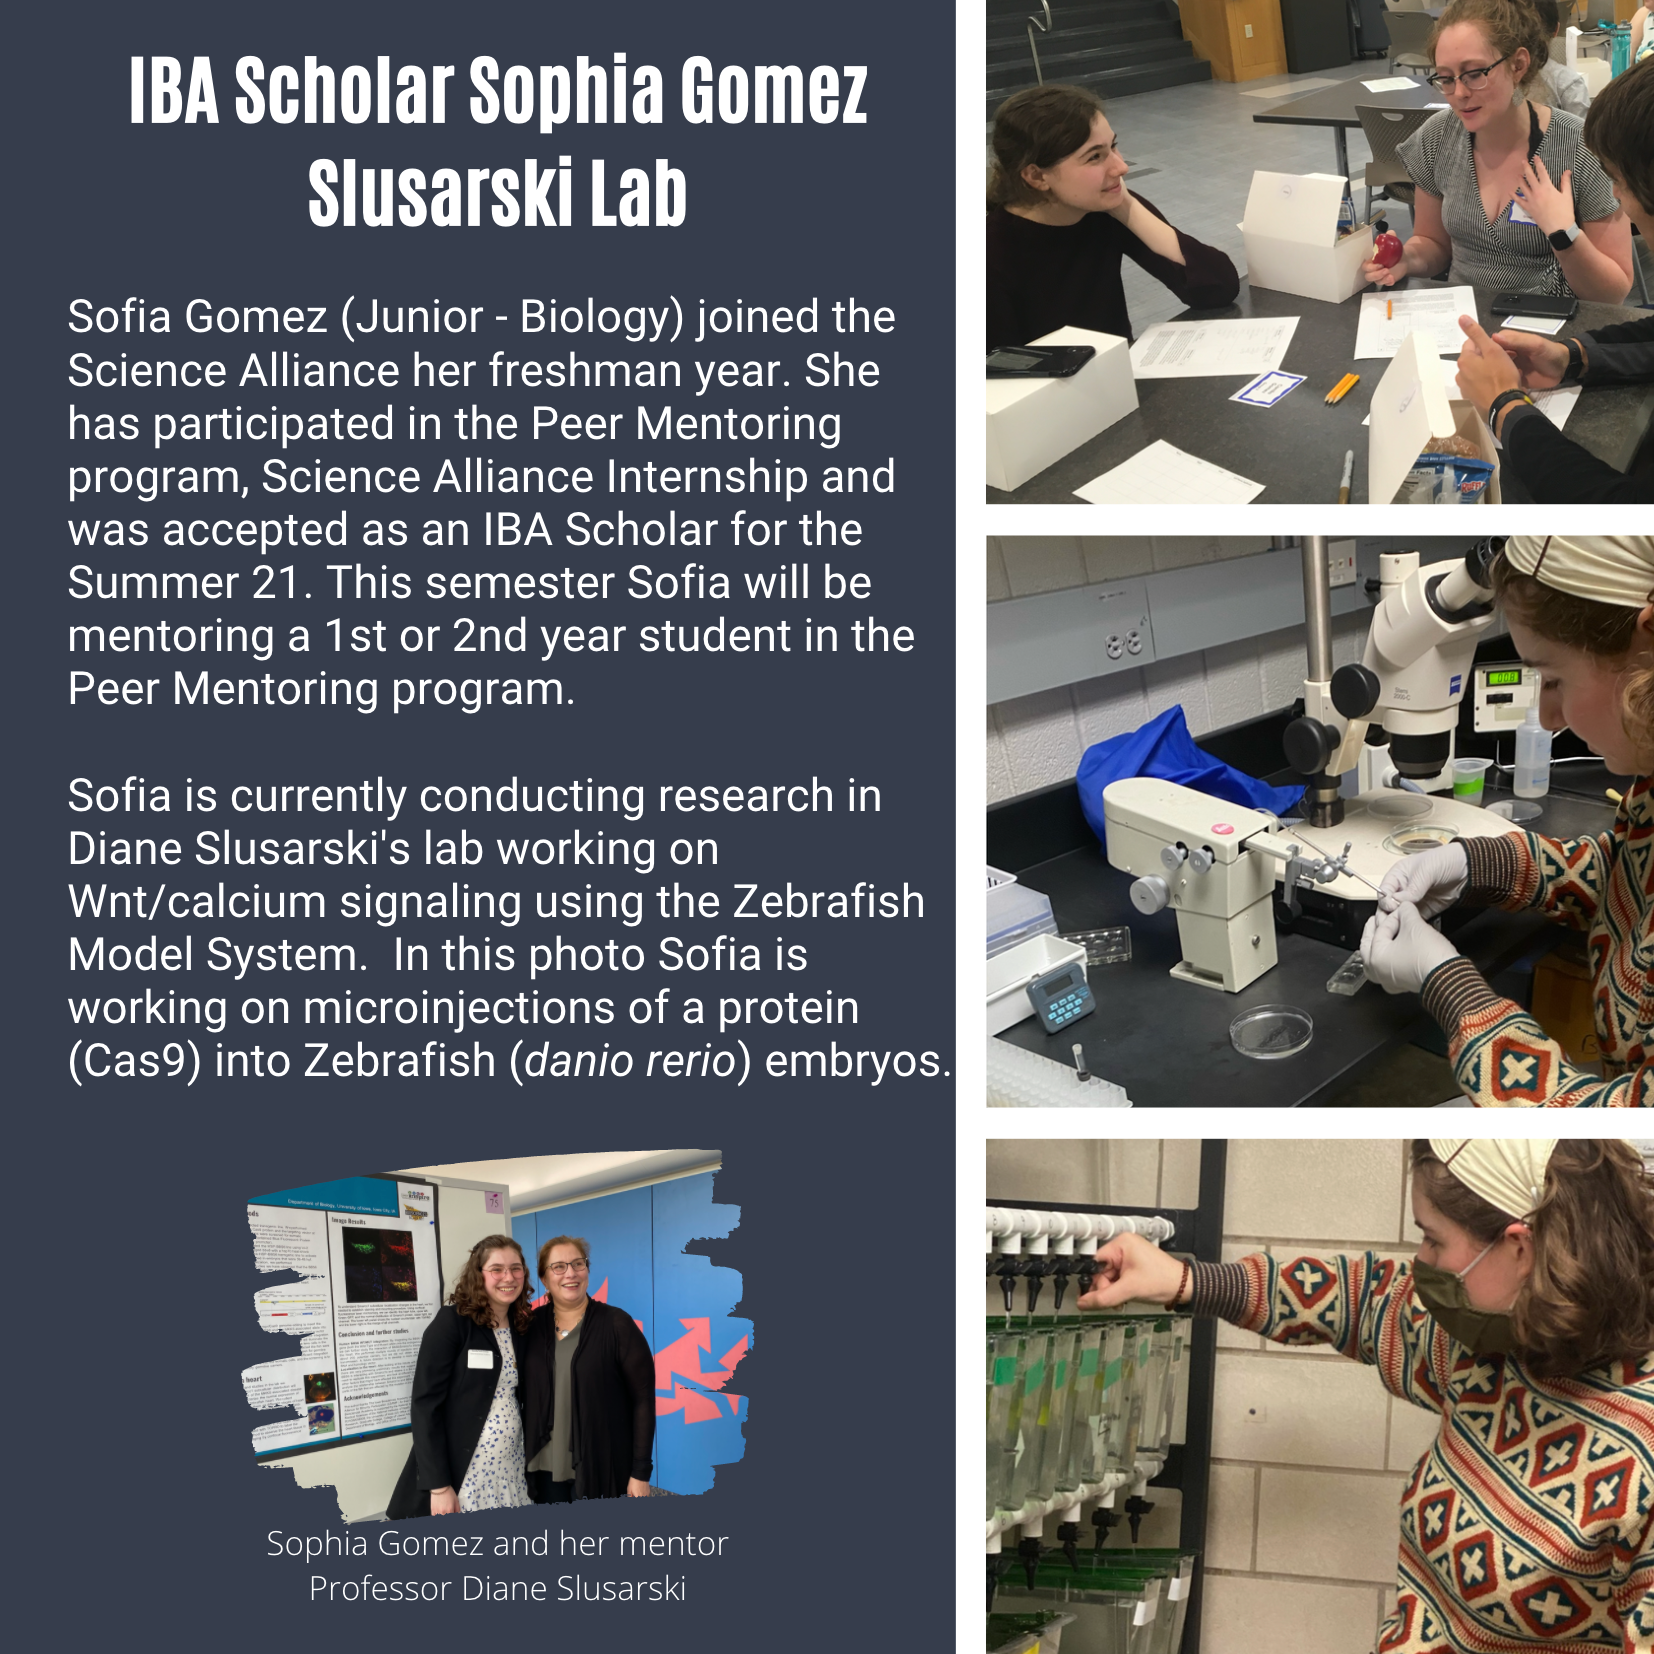 Poster of student Sophia Gomez and her work with Diane Slusarski in the Slusarski Lab.